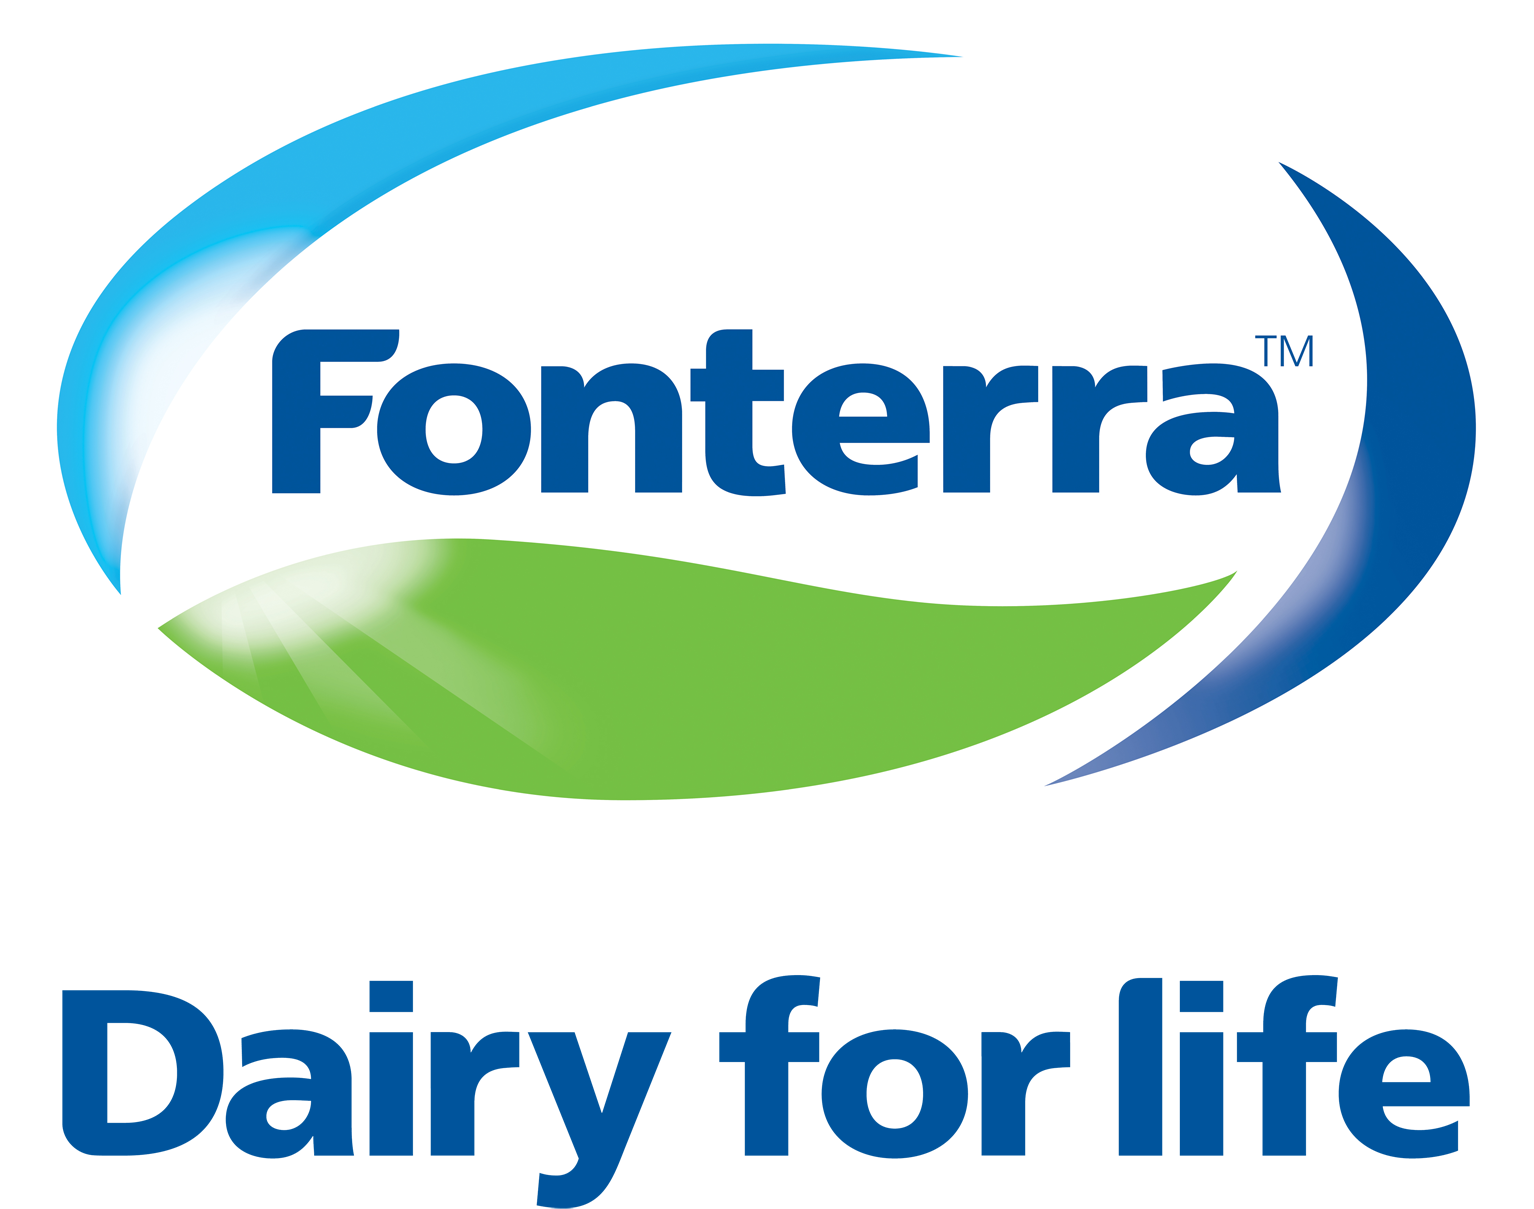 Fonterrra company logo